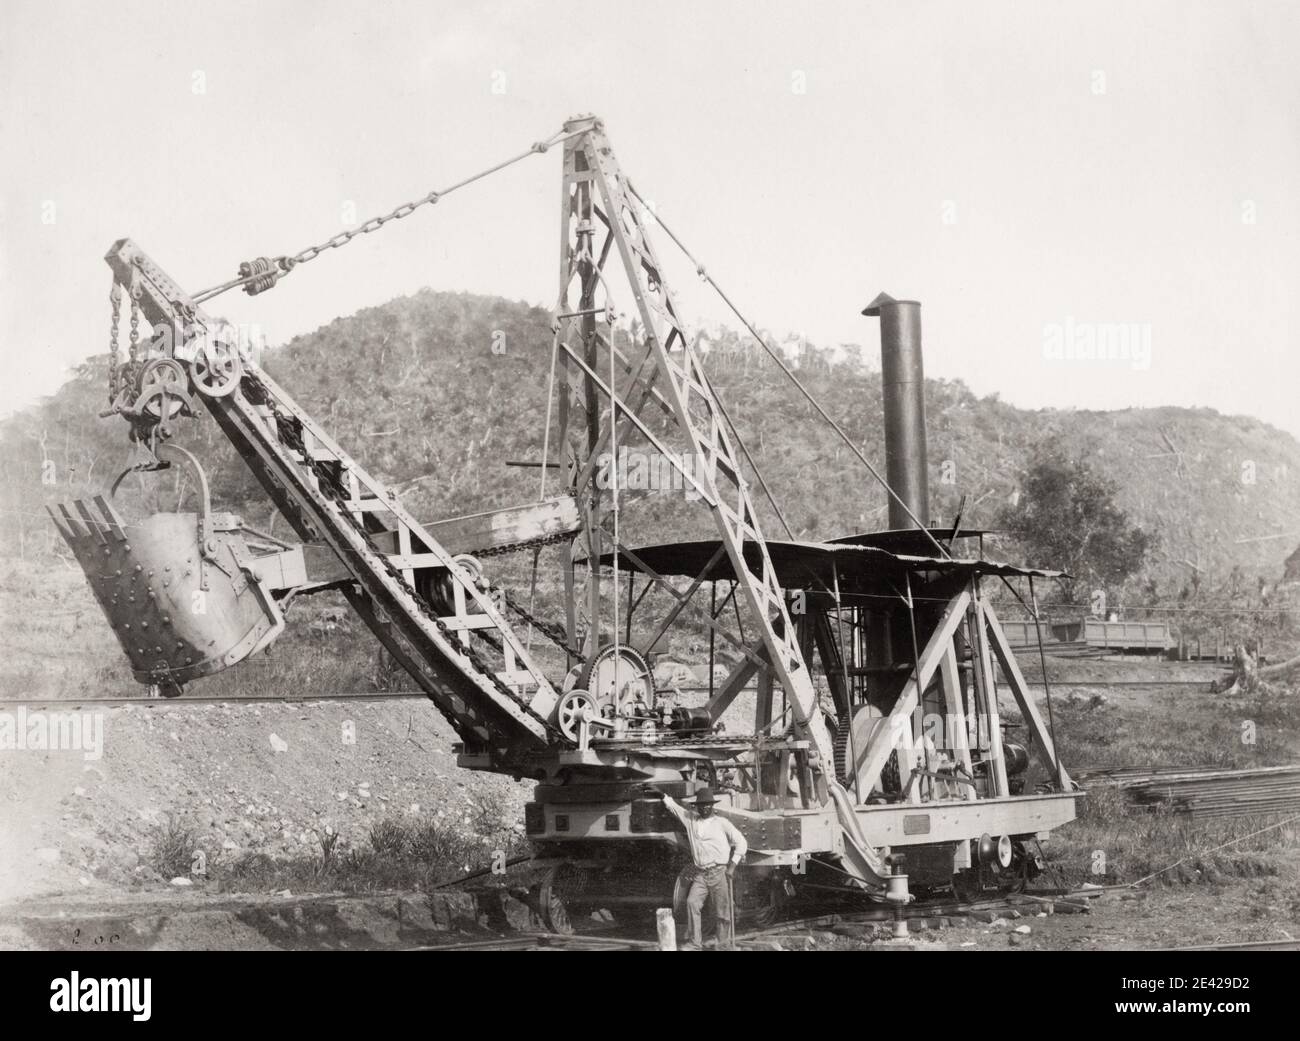 Vintage 19. Jahrhundert Foto: Bild bezieht sich auf den ersten Französisch geführten Versuch, den Panama-Kanal in den 1880er Jahren unter der Aufsicht von Ferdinand de Lesseps zu bauen. Bagger. Stockfoto